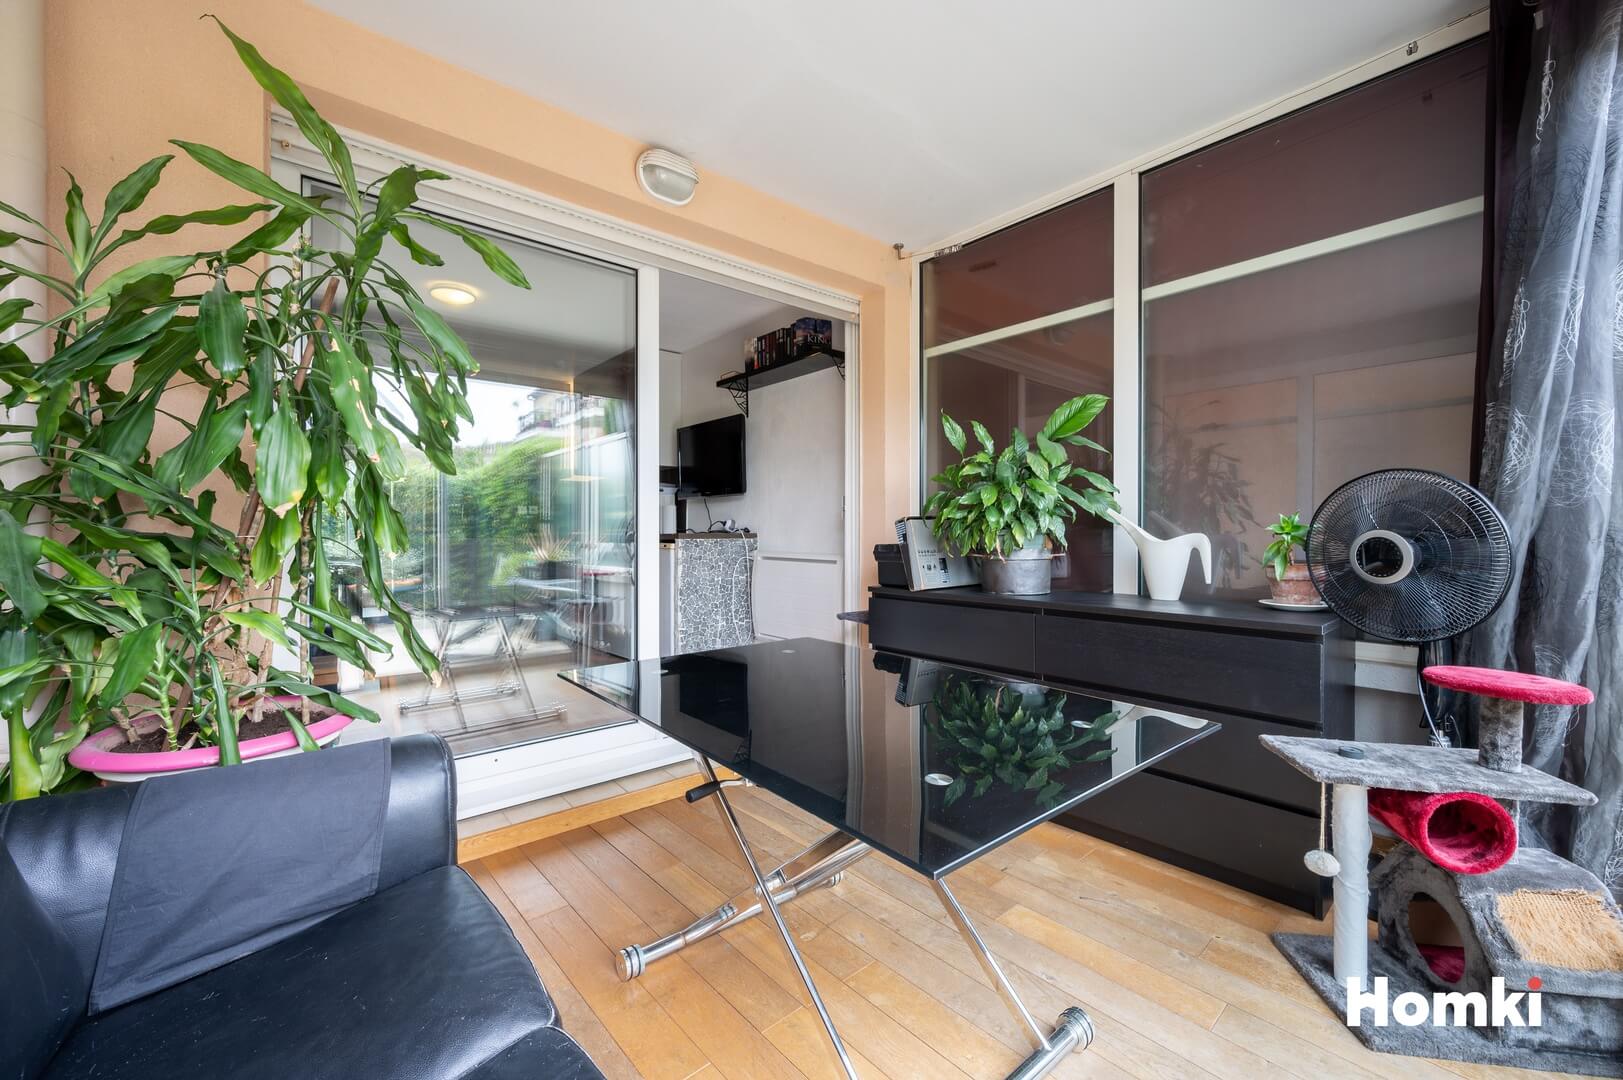 Homki - Vente Appartement  de 29.01 m² à Le Cannet 06110